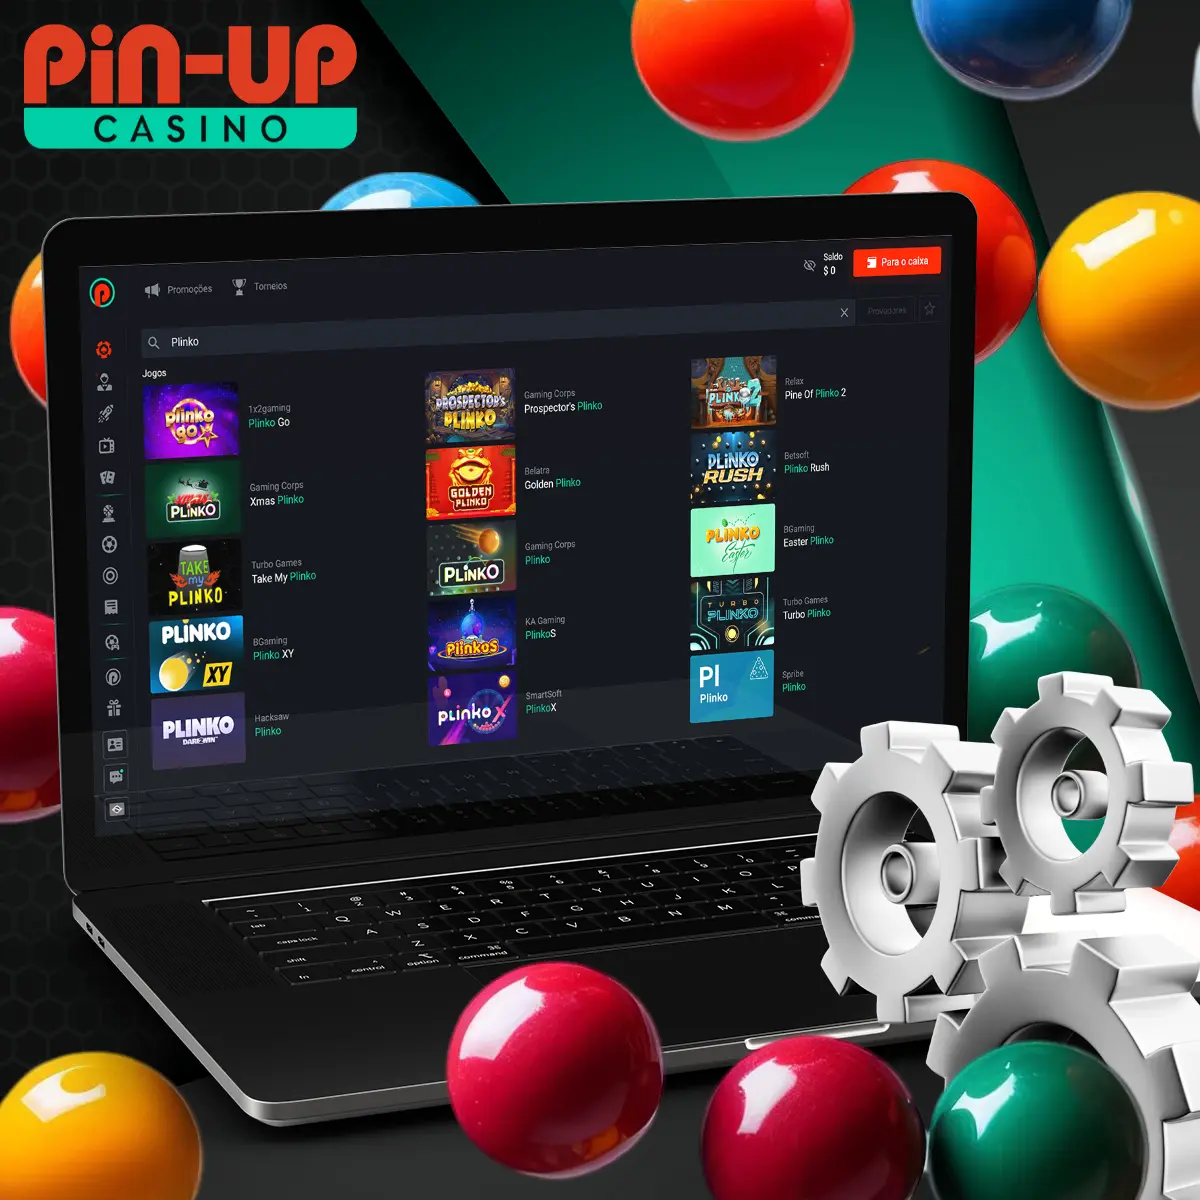 Tudo sobre Plinco o aplicativo Android da casa de apostas Pin Up no Brasil